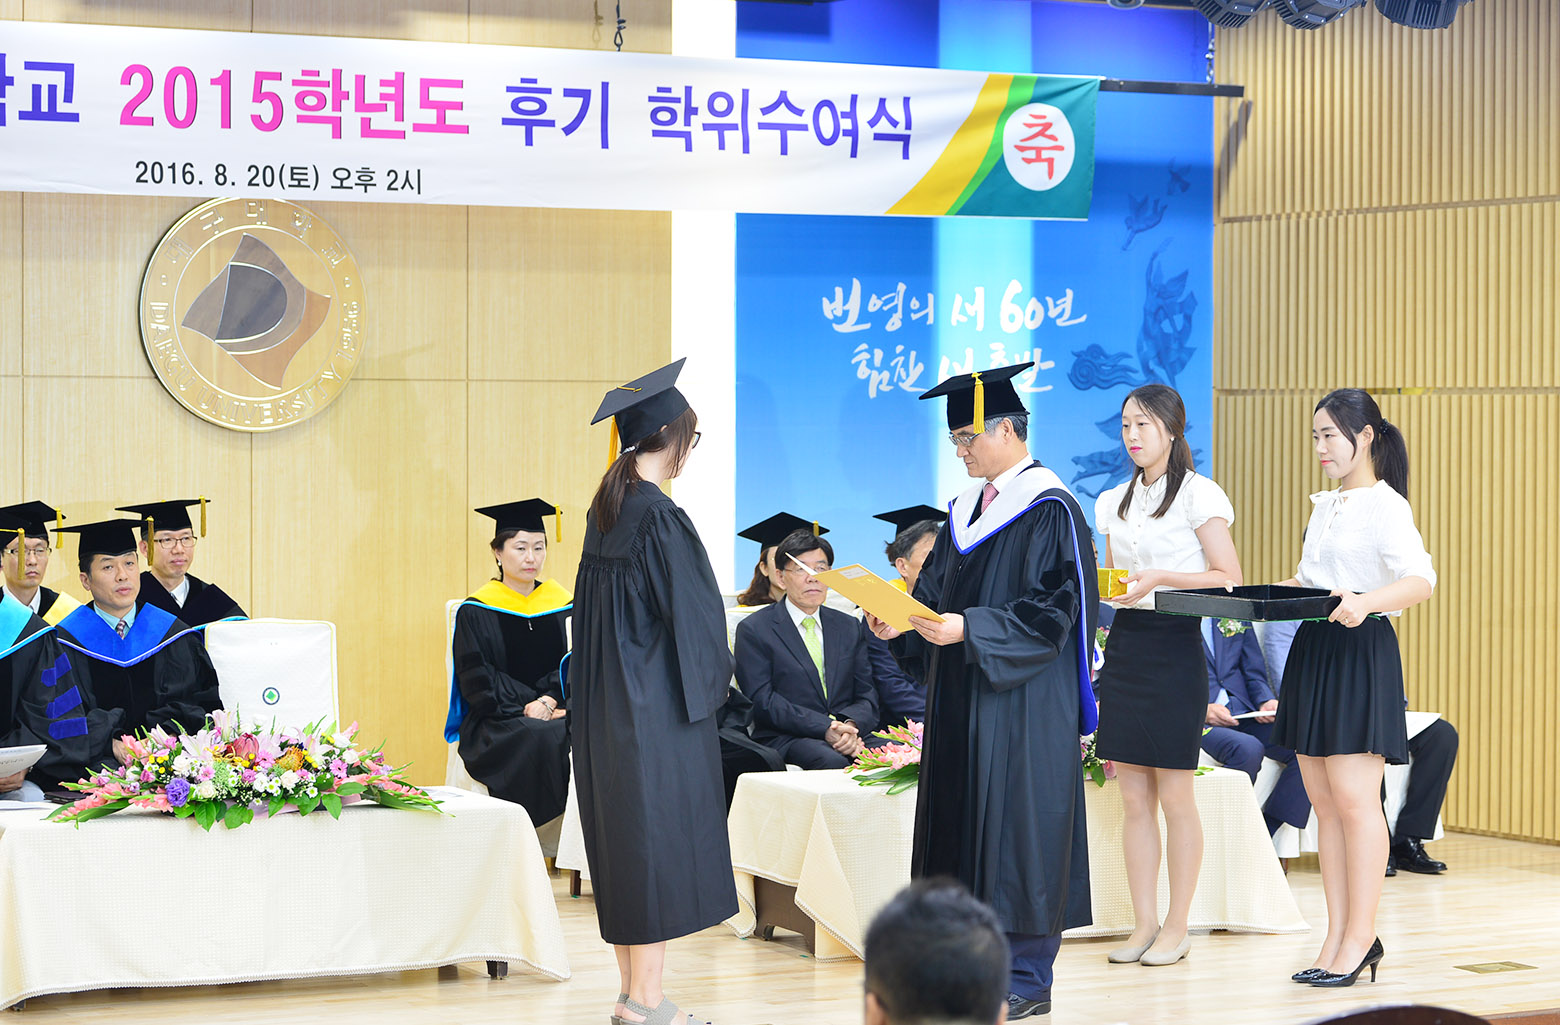 4. 선배의 졸업을 축하하기 위해 참석한 후배 재학생 모습